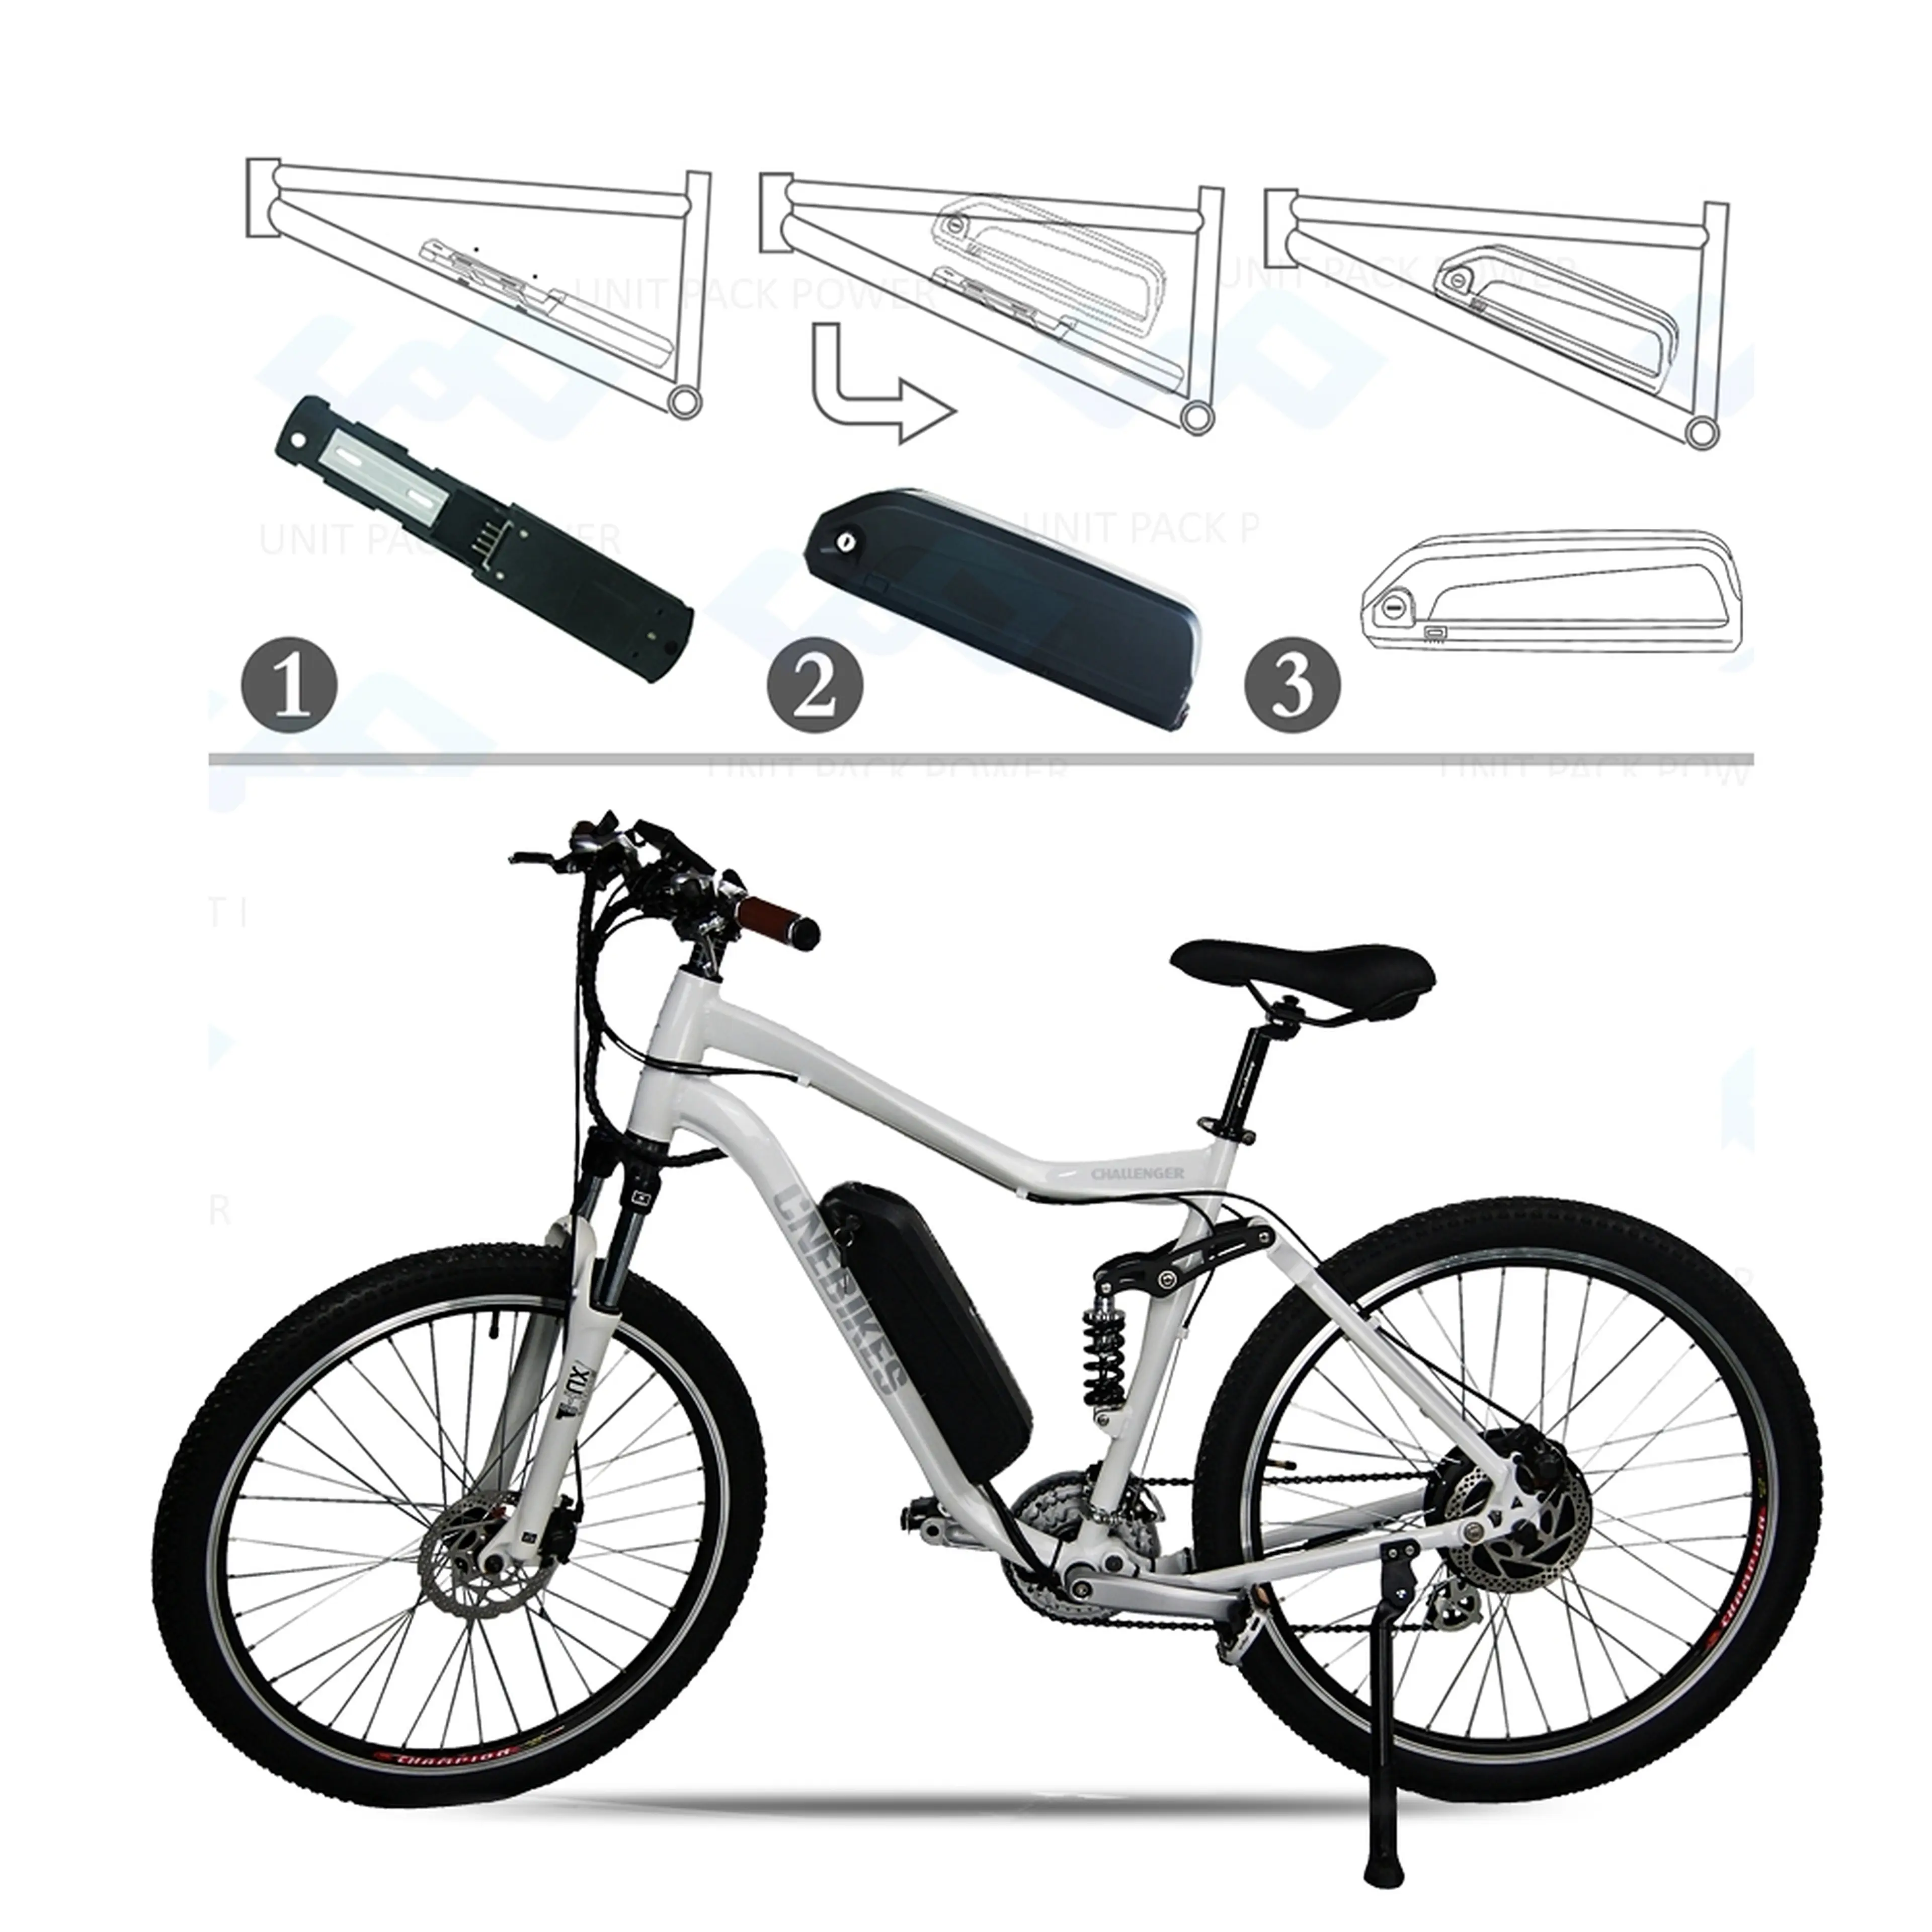 2. Pret avantajos la kit nou ptr.modificarea bicicletei in una electrica.